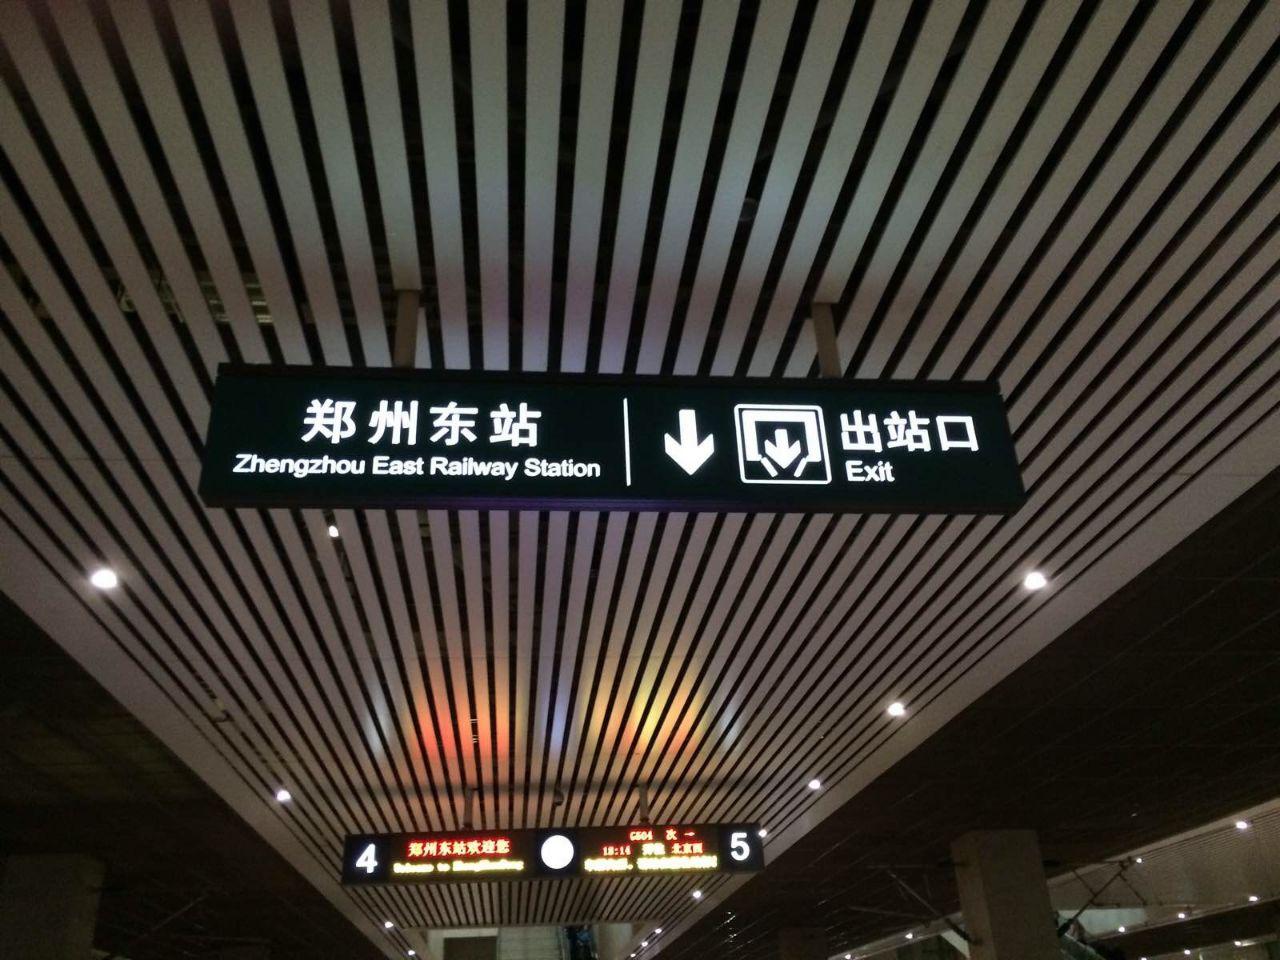 原创 正文☆位于郑州高铁东站p5停车场的网约车专属停靠点,将于2021